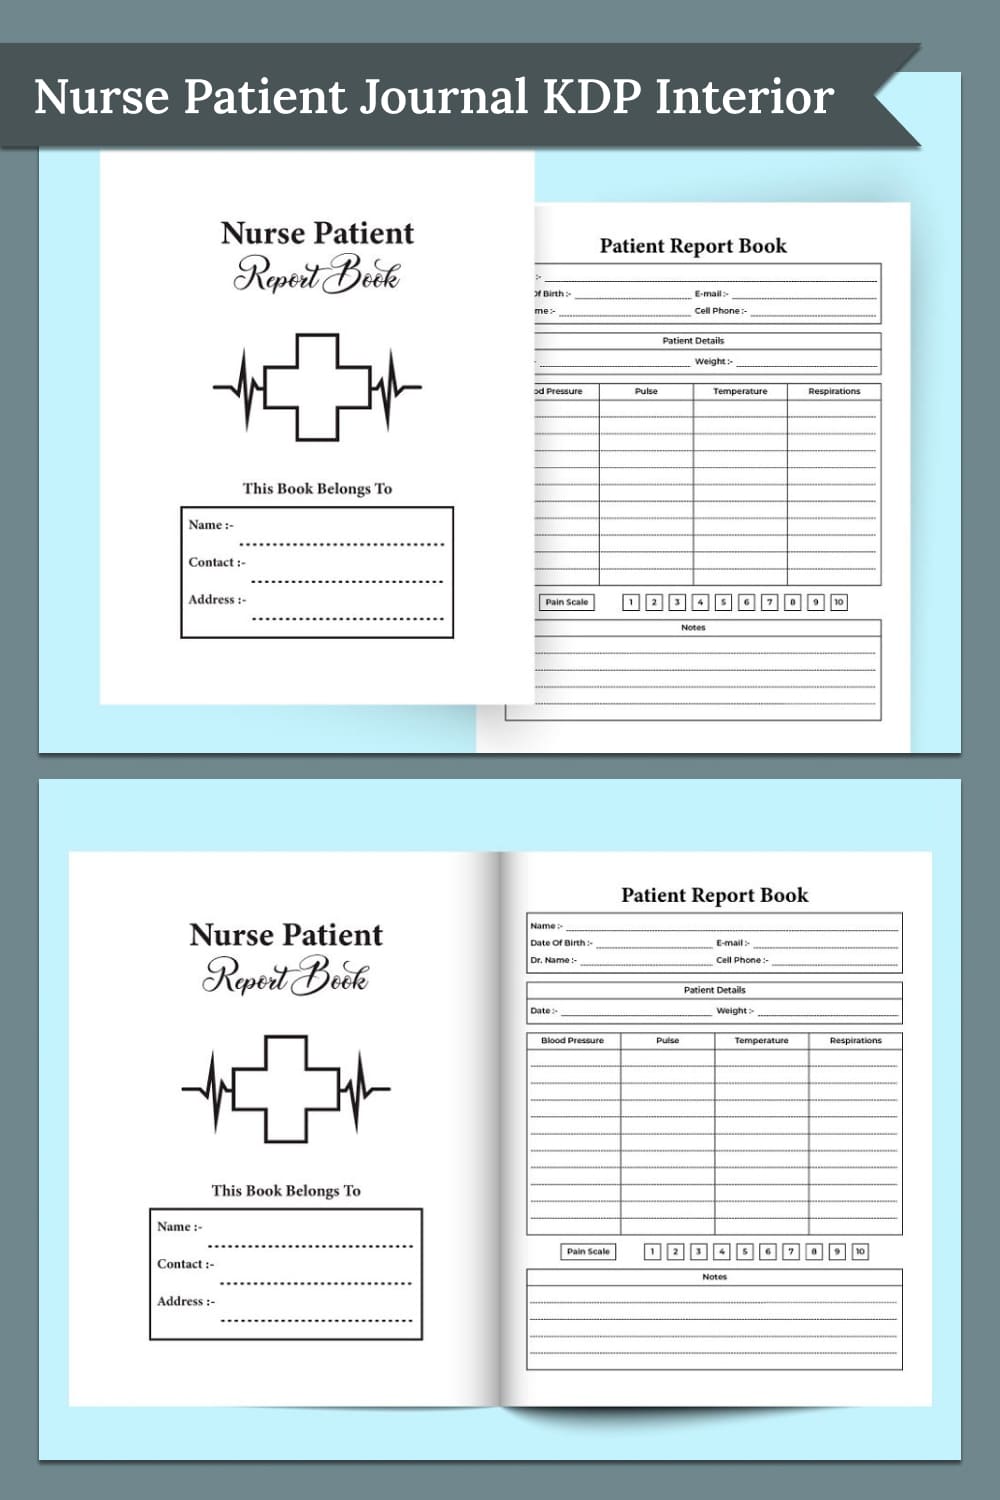 Nurse patient journal KDP interior - pinterest image preview.